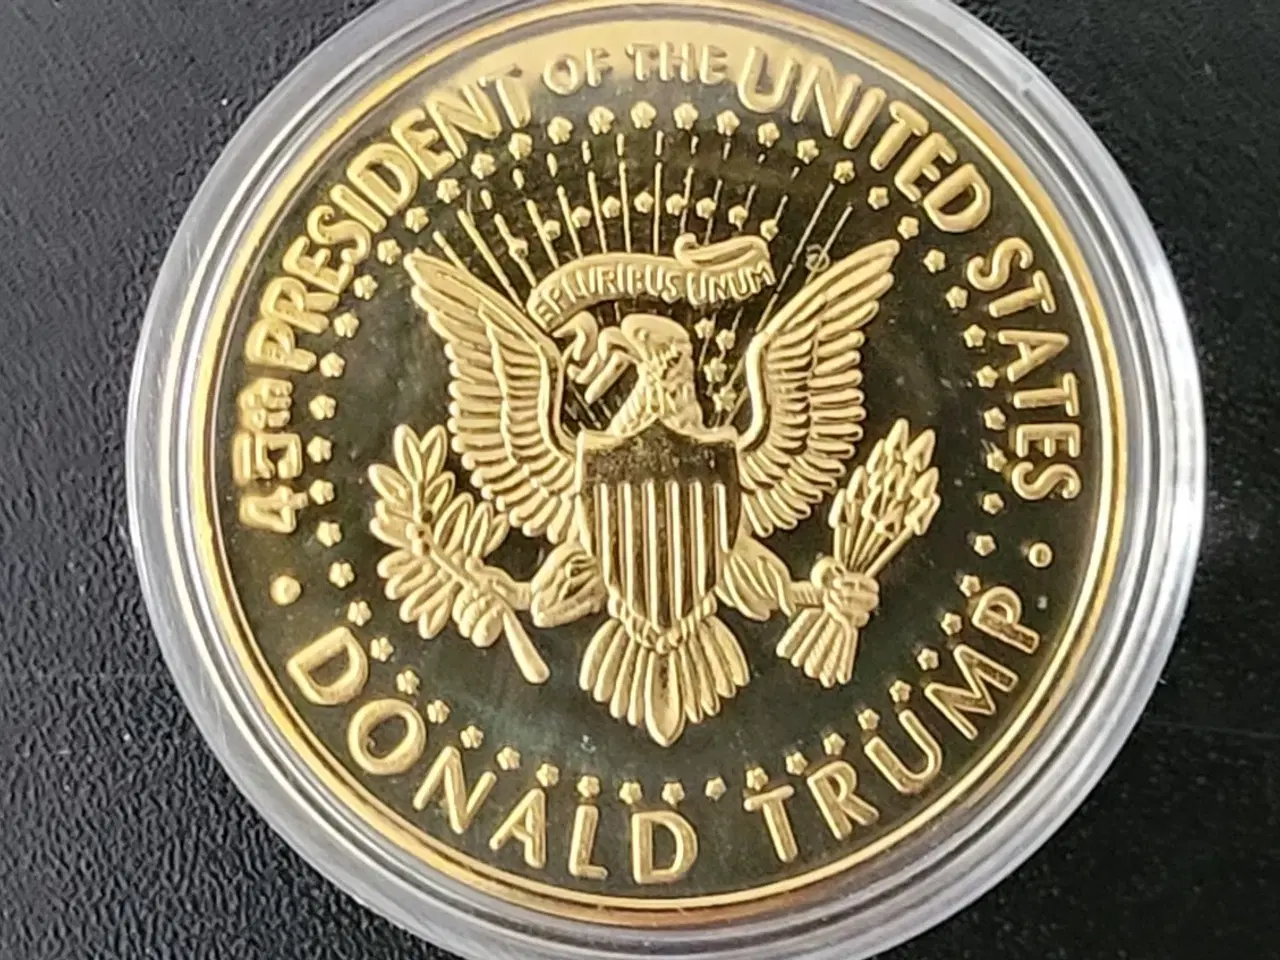 Billede 6 - USA Trump sæt kasket+flag+medalje+nøglering